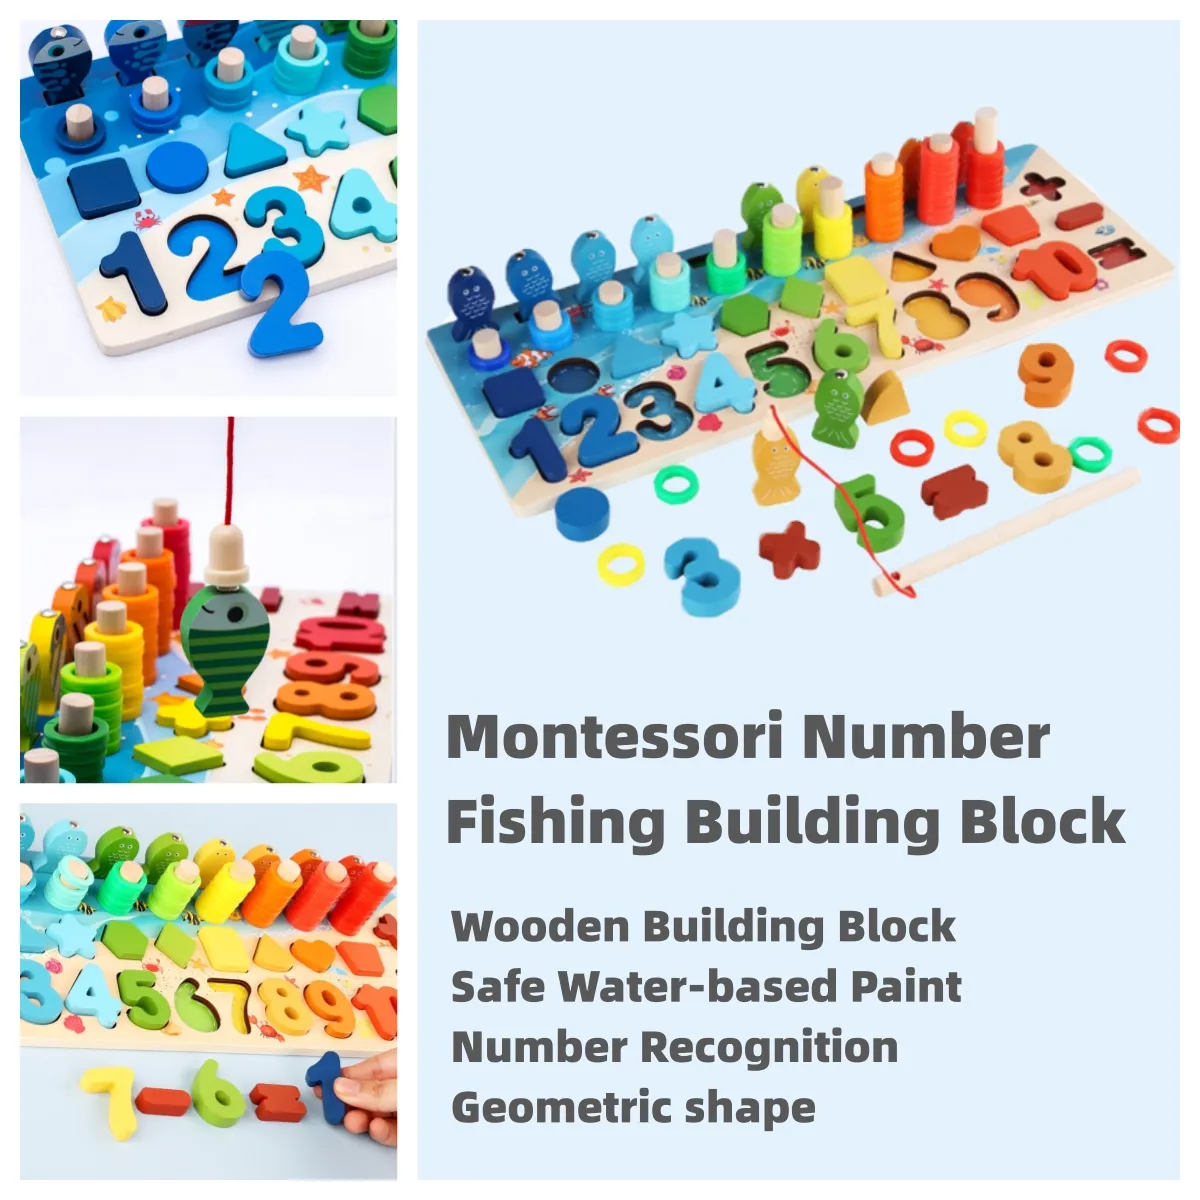 Montessori-Zahlenblöcke aus Holz mit Zählbrett - Lernspielzeug für Vorschulkinder, perfekt als Geburtstags- oder Weihnachtsgeschenk Mehrfarbig big image 1